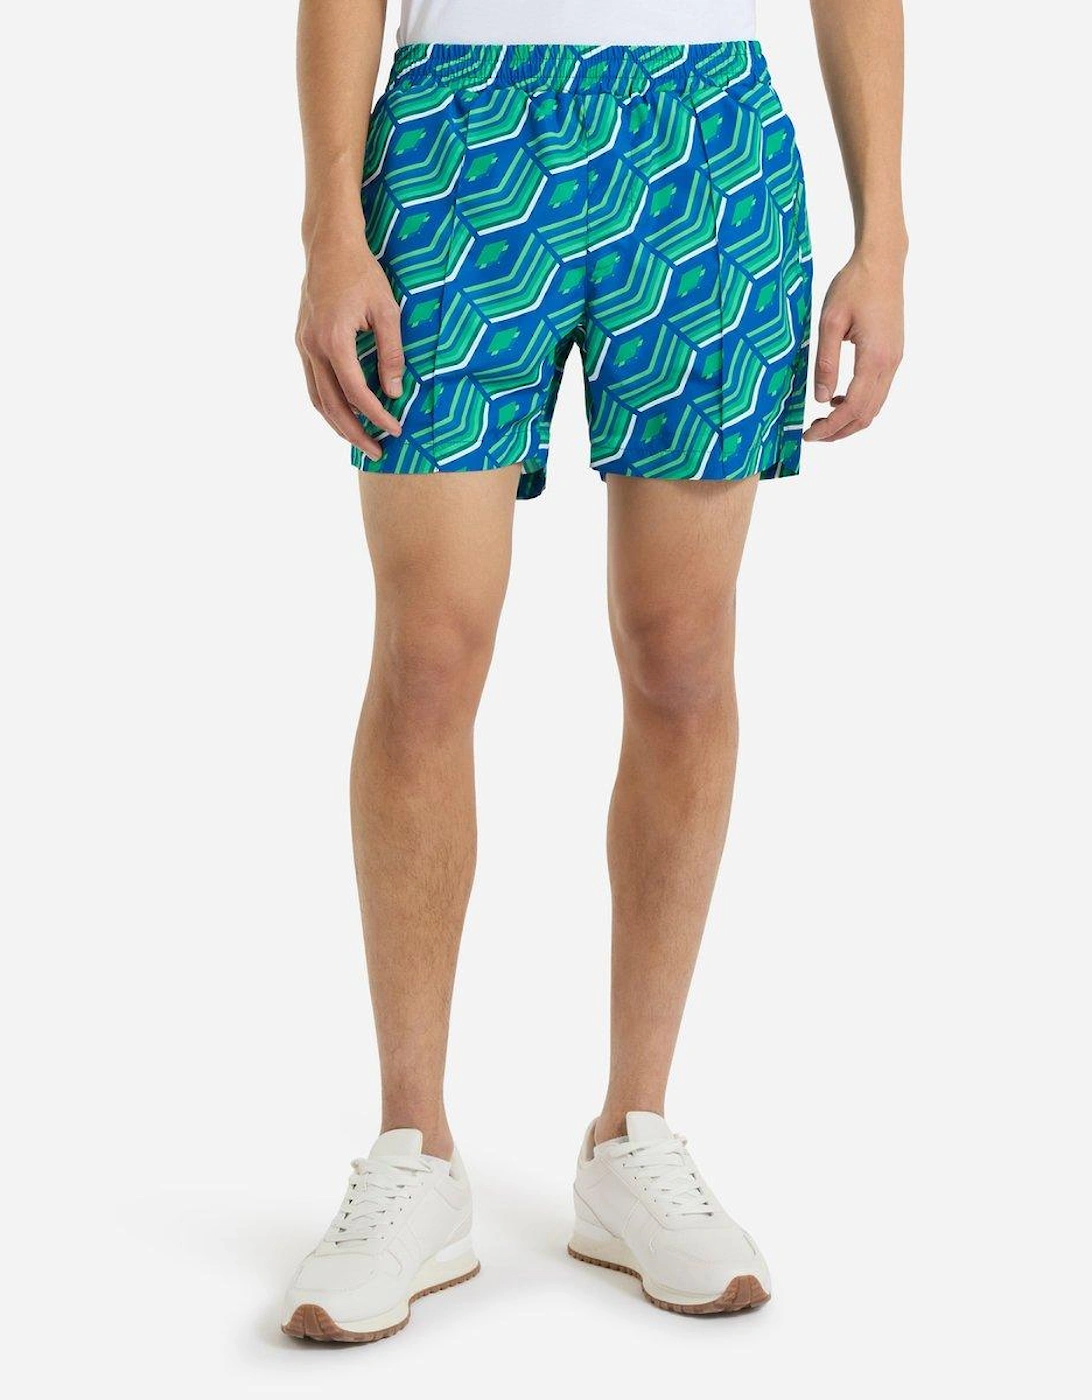 Mens Printed Swim Shorts, 2 of 1